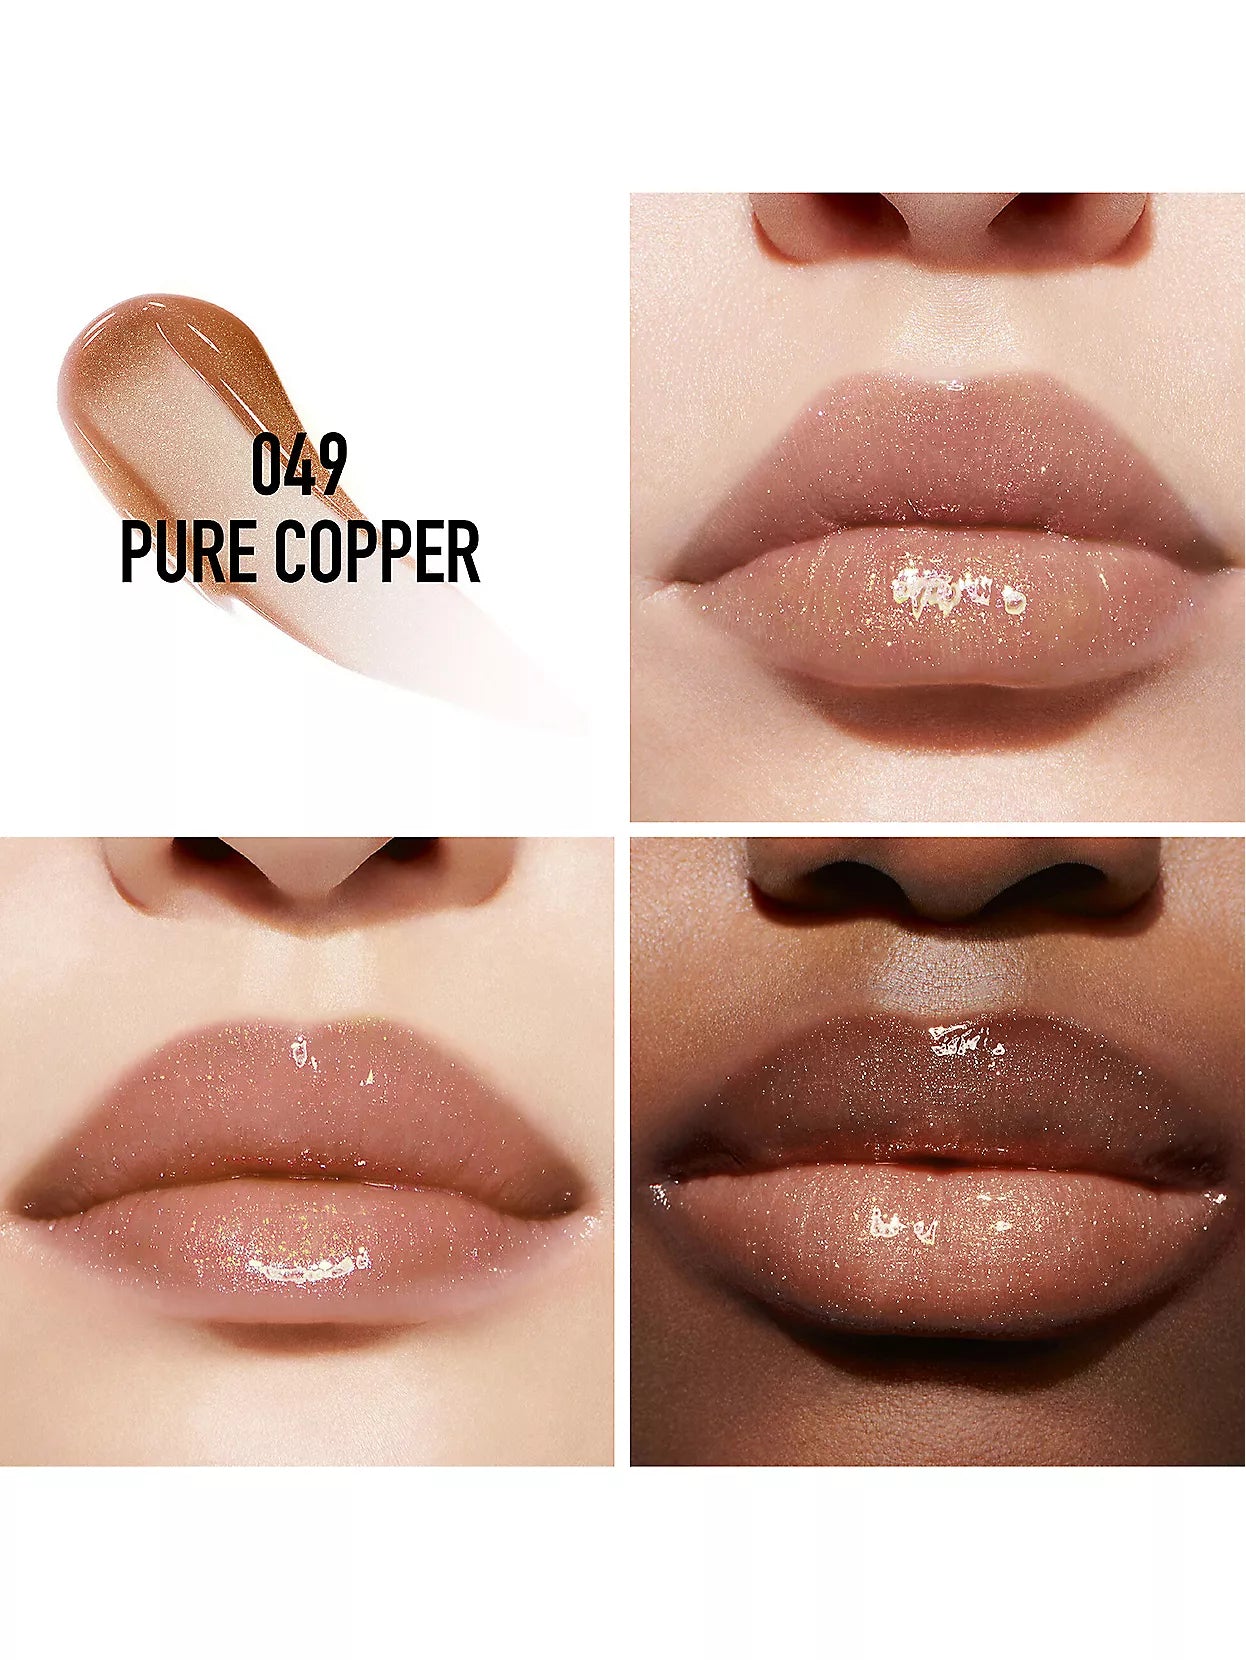 Dior Addict Limited-Edition Lip Maximiser in Pure Copper